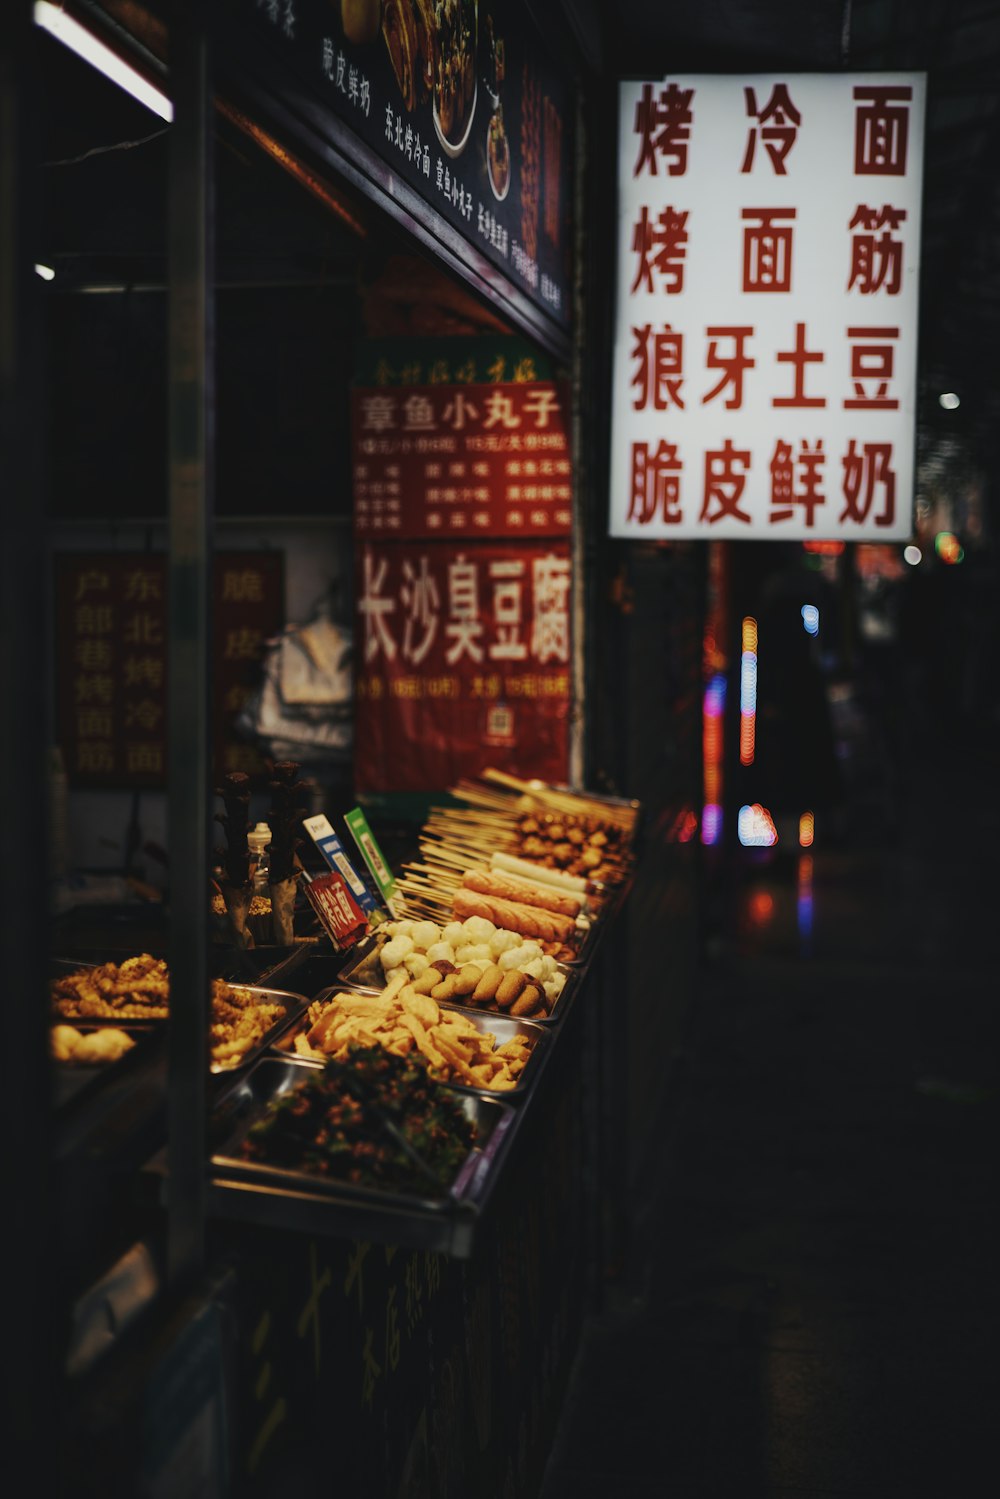 Ein Essensstand mit chinesischer Schrift